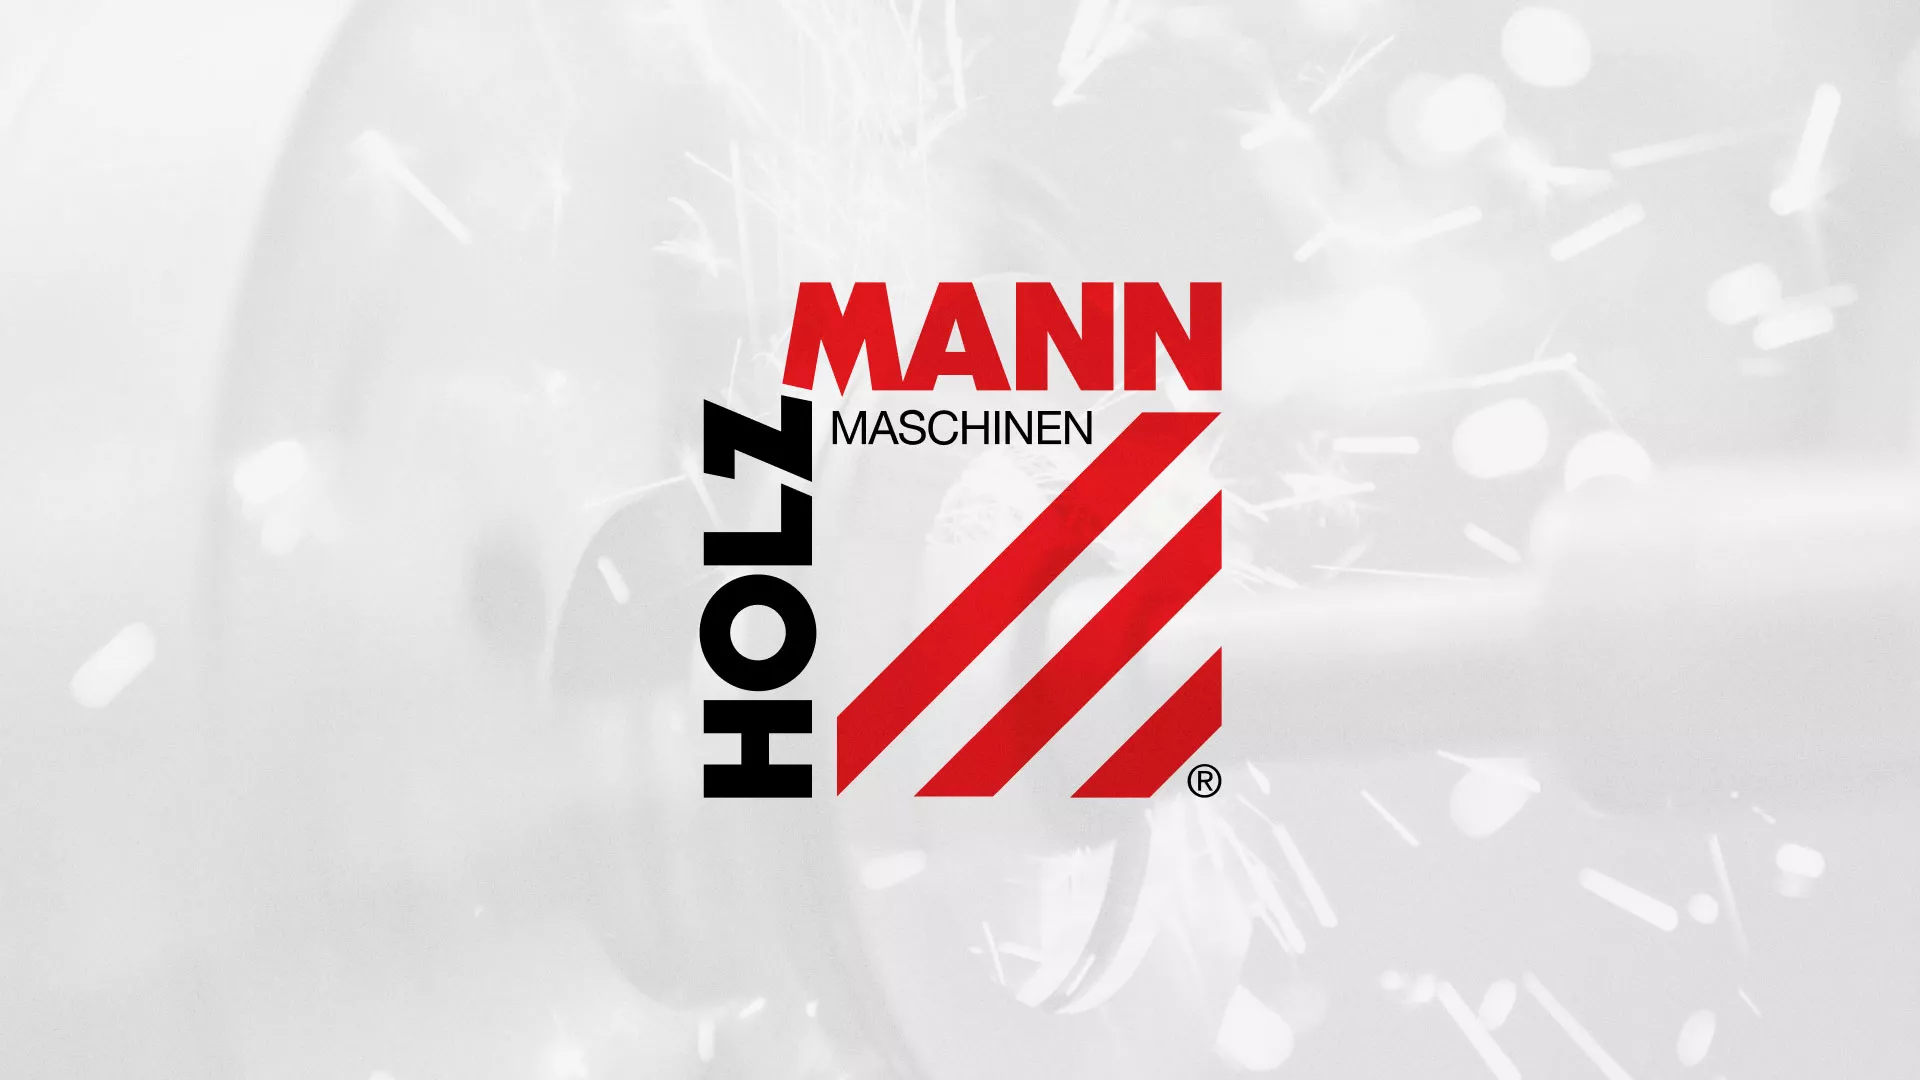 Создание сайта компании «HOLZMANN Maschinen GmbH» в Шимановске